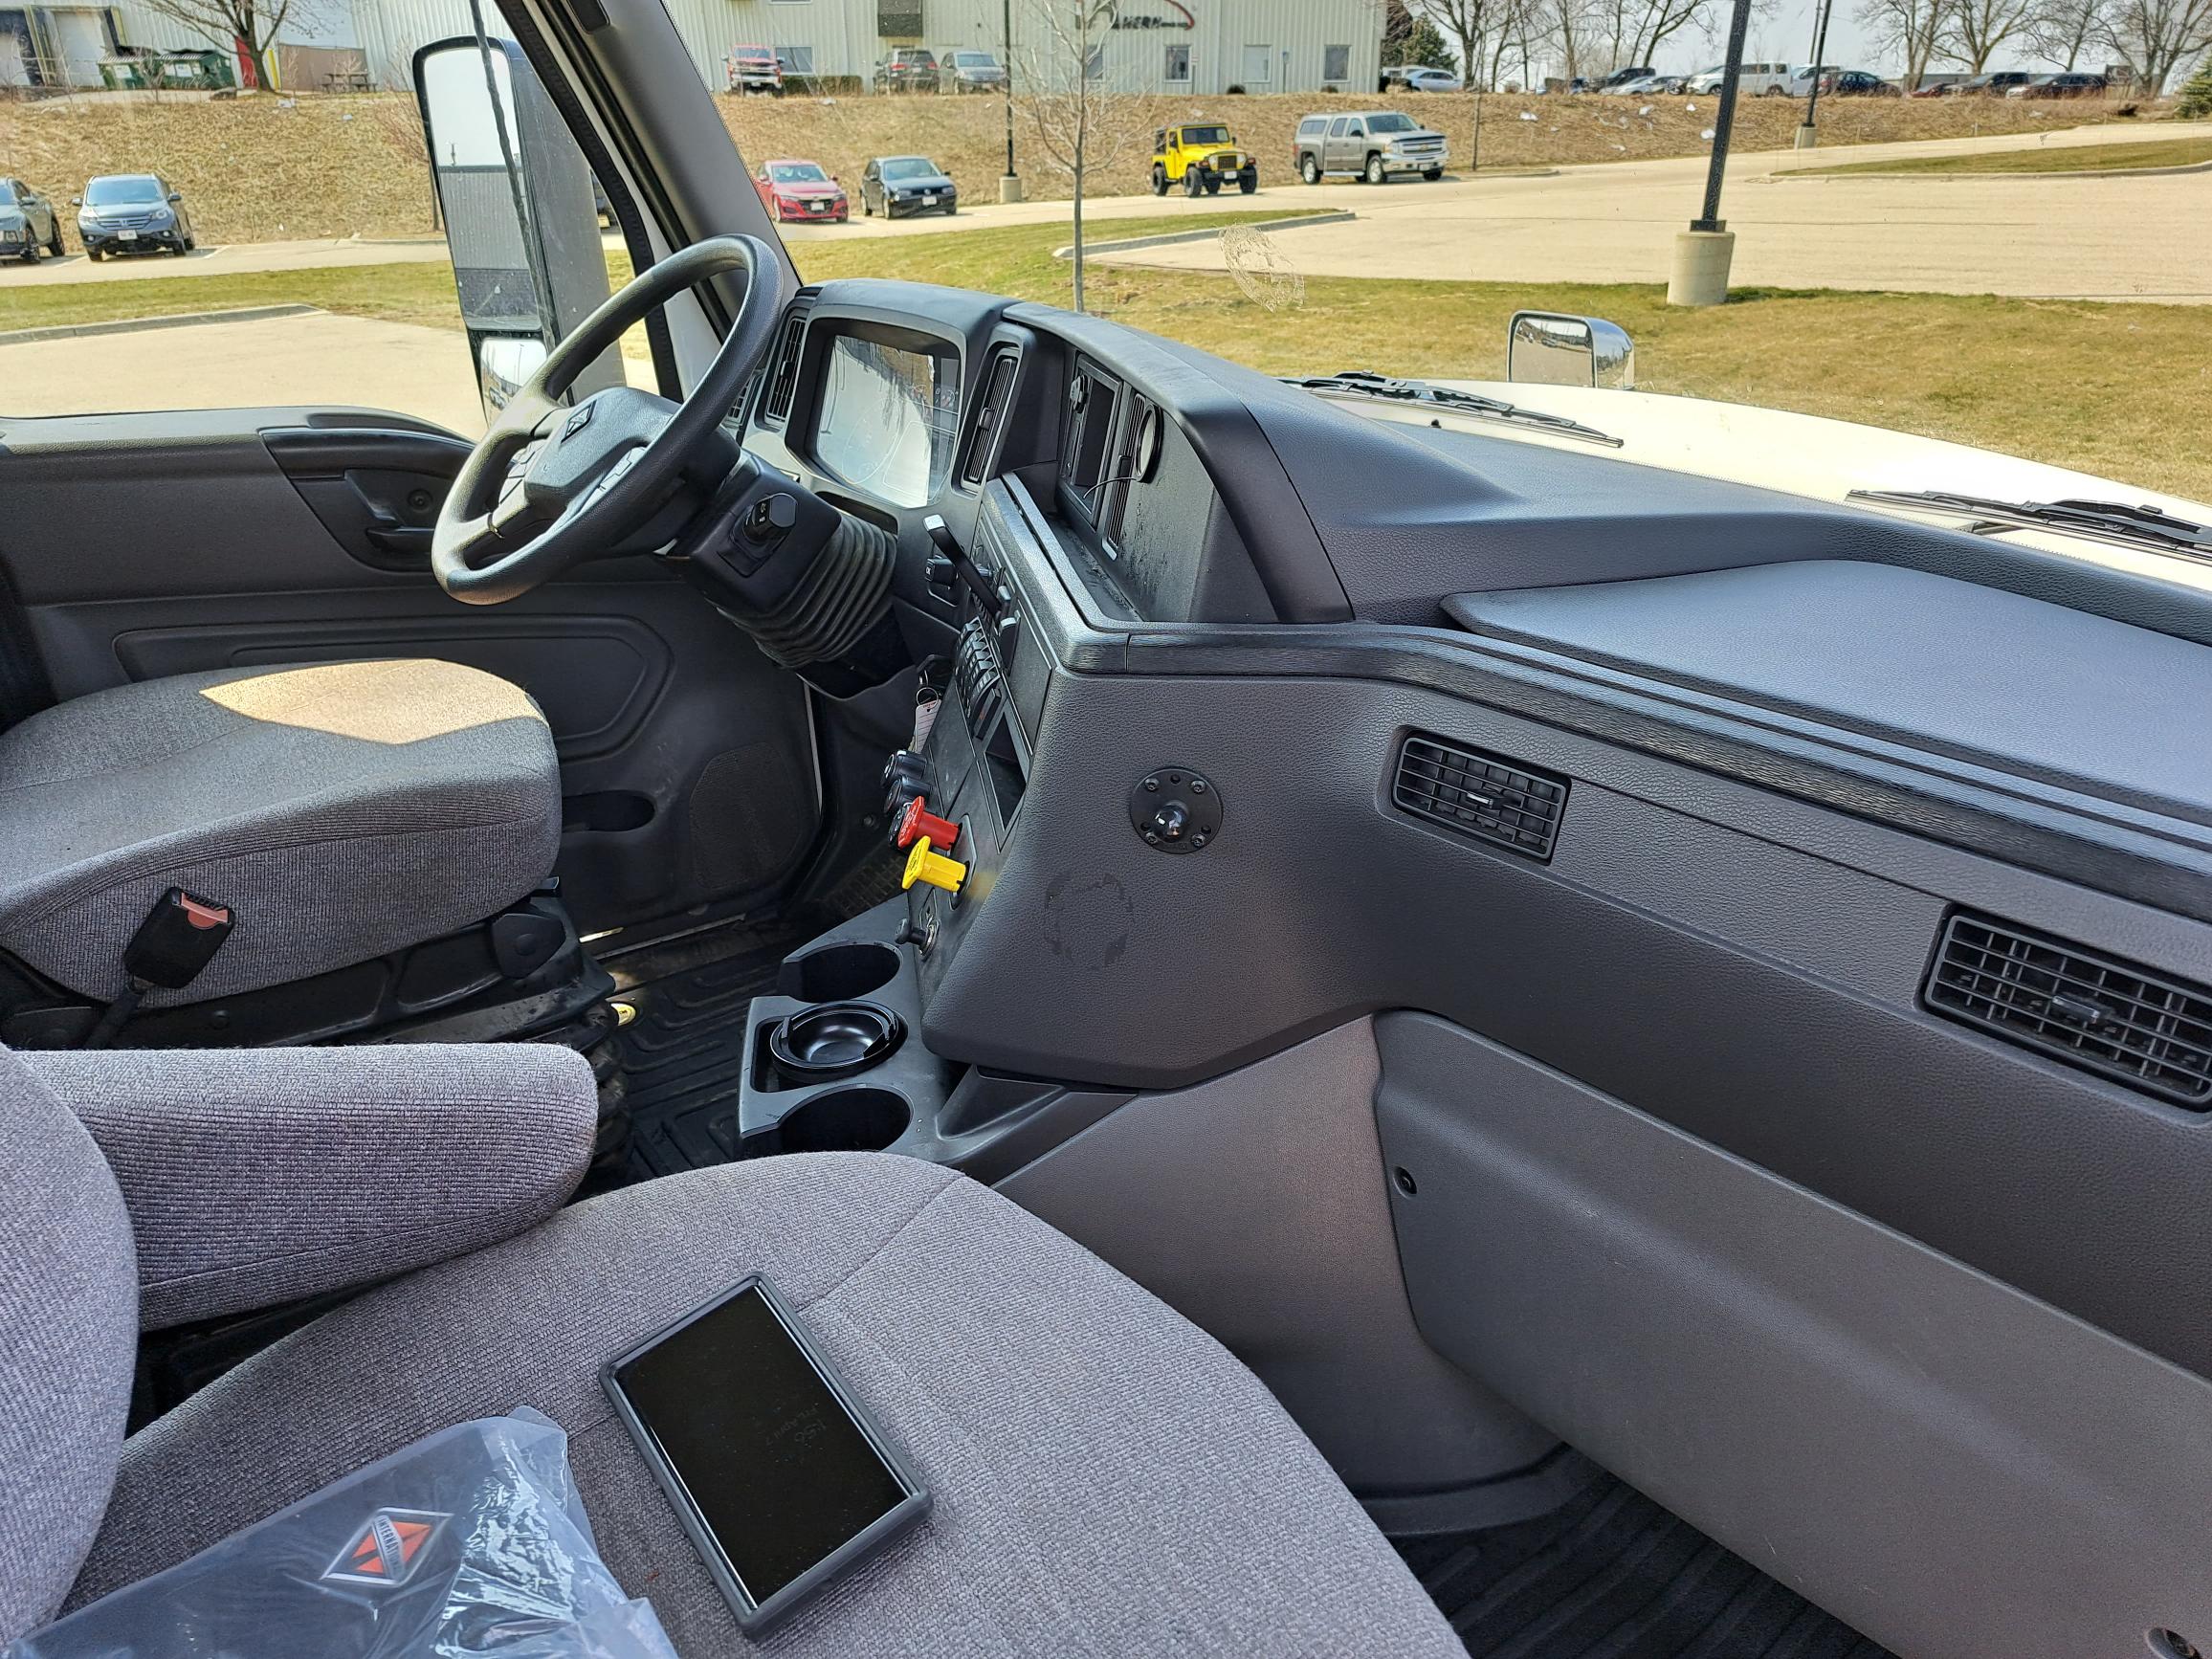 2018 International LT Sleeper Semi Truck - 73